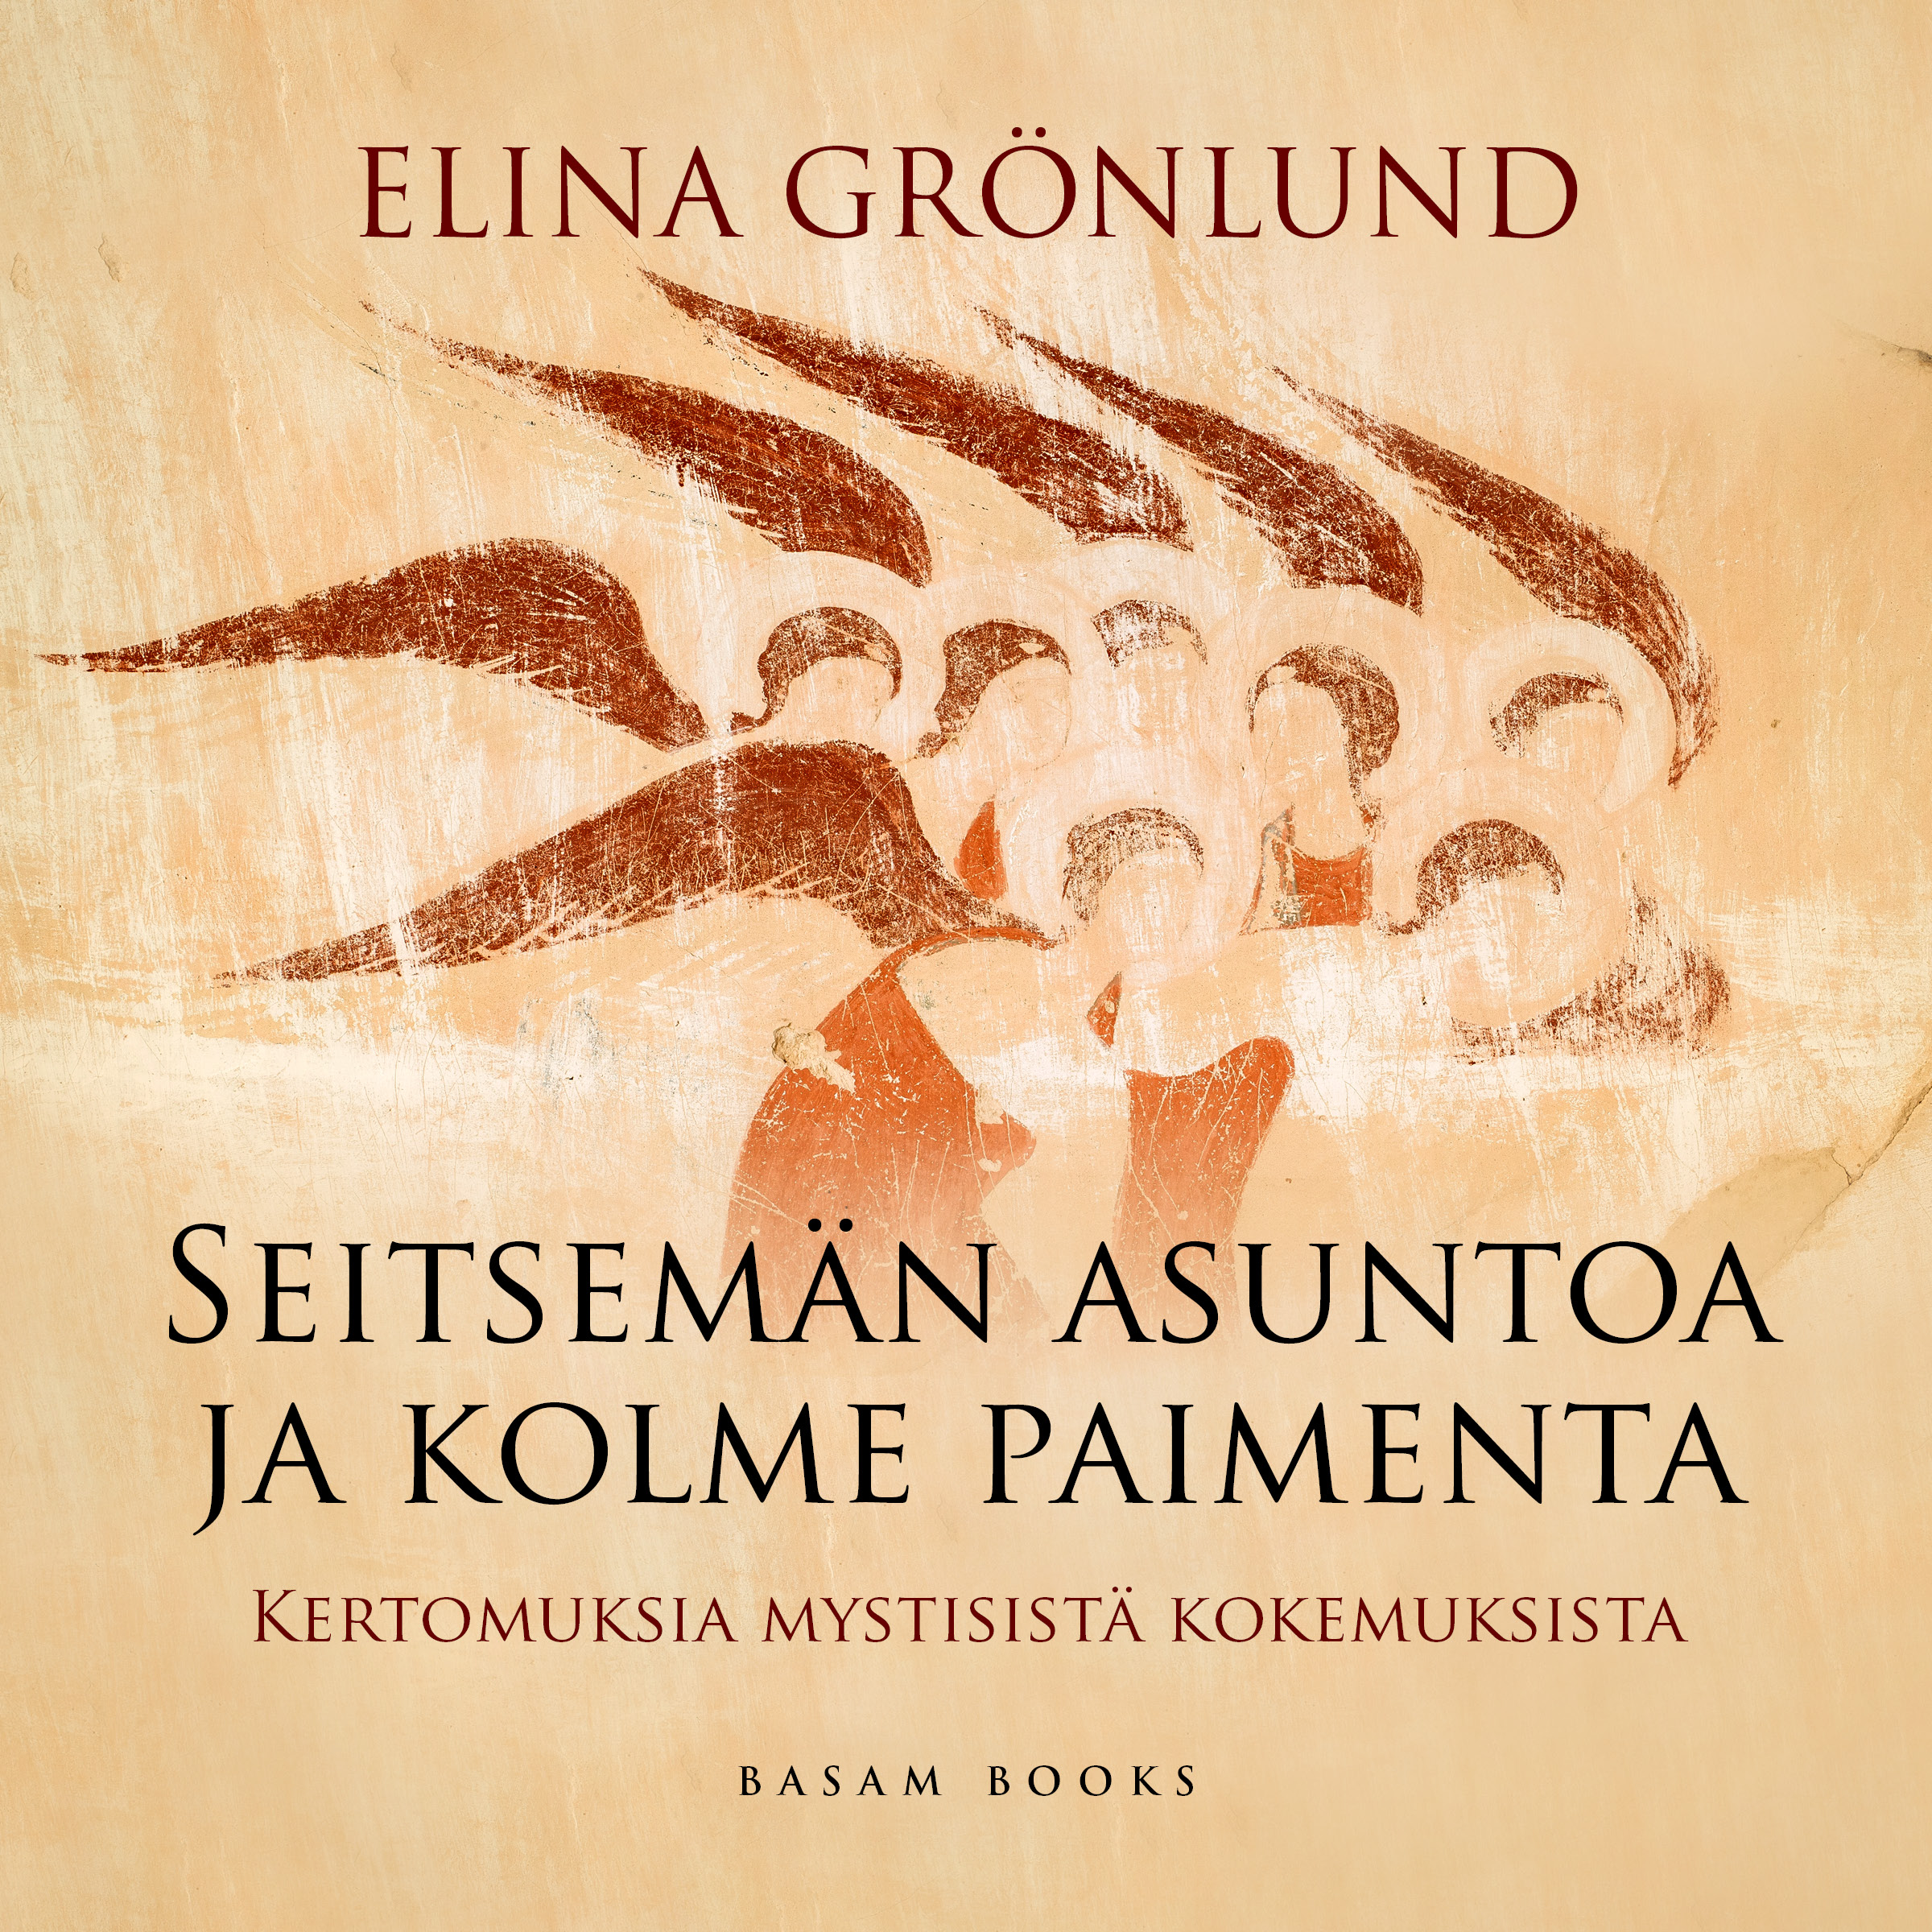 Grönlund, Elina - Seitsemän asuntoa ja kolme paimenta, audiobook